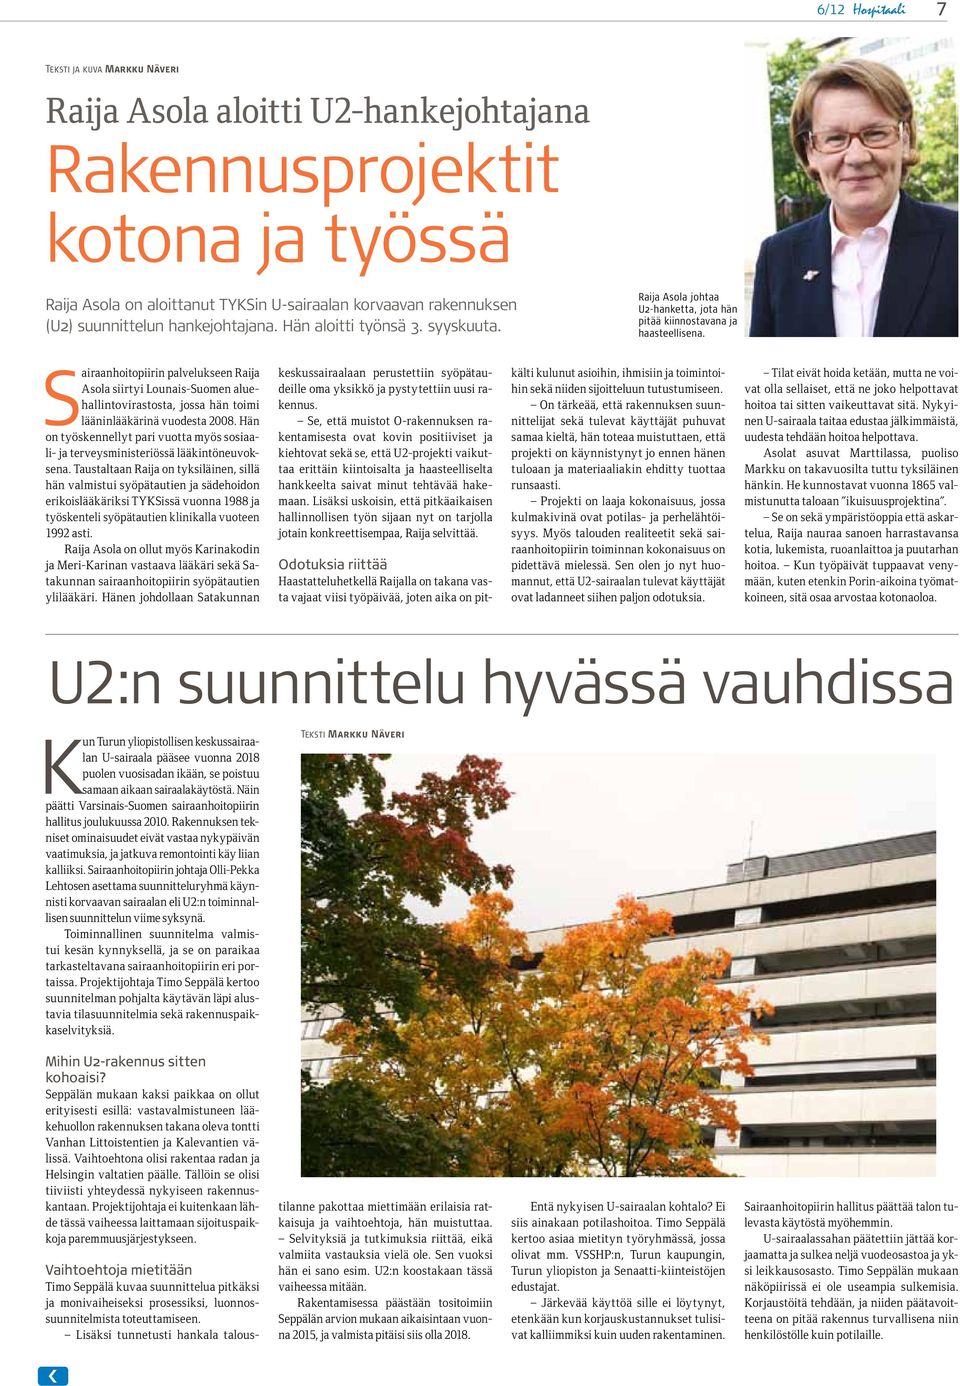 Sairaanhoitopiirin palvelukseen Raija Asola siirtyi Lounais-Suomen aluehallintovirastosta, jossa hän toimi lääninlääkärinä vuodesta 2008.